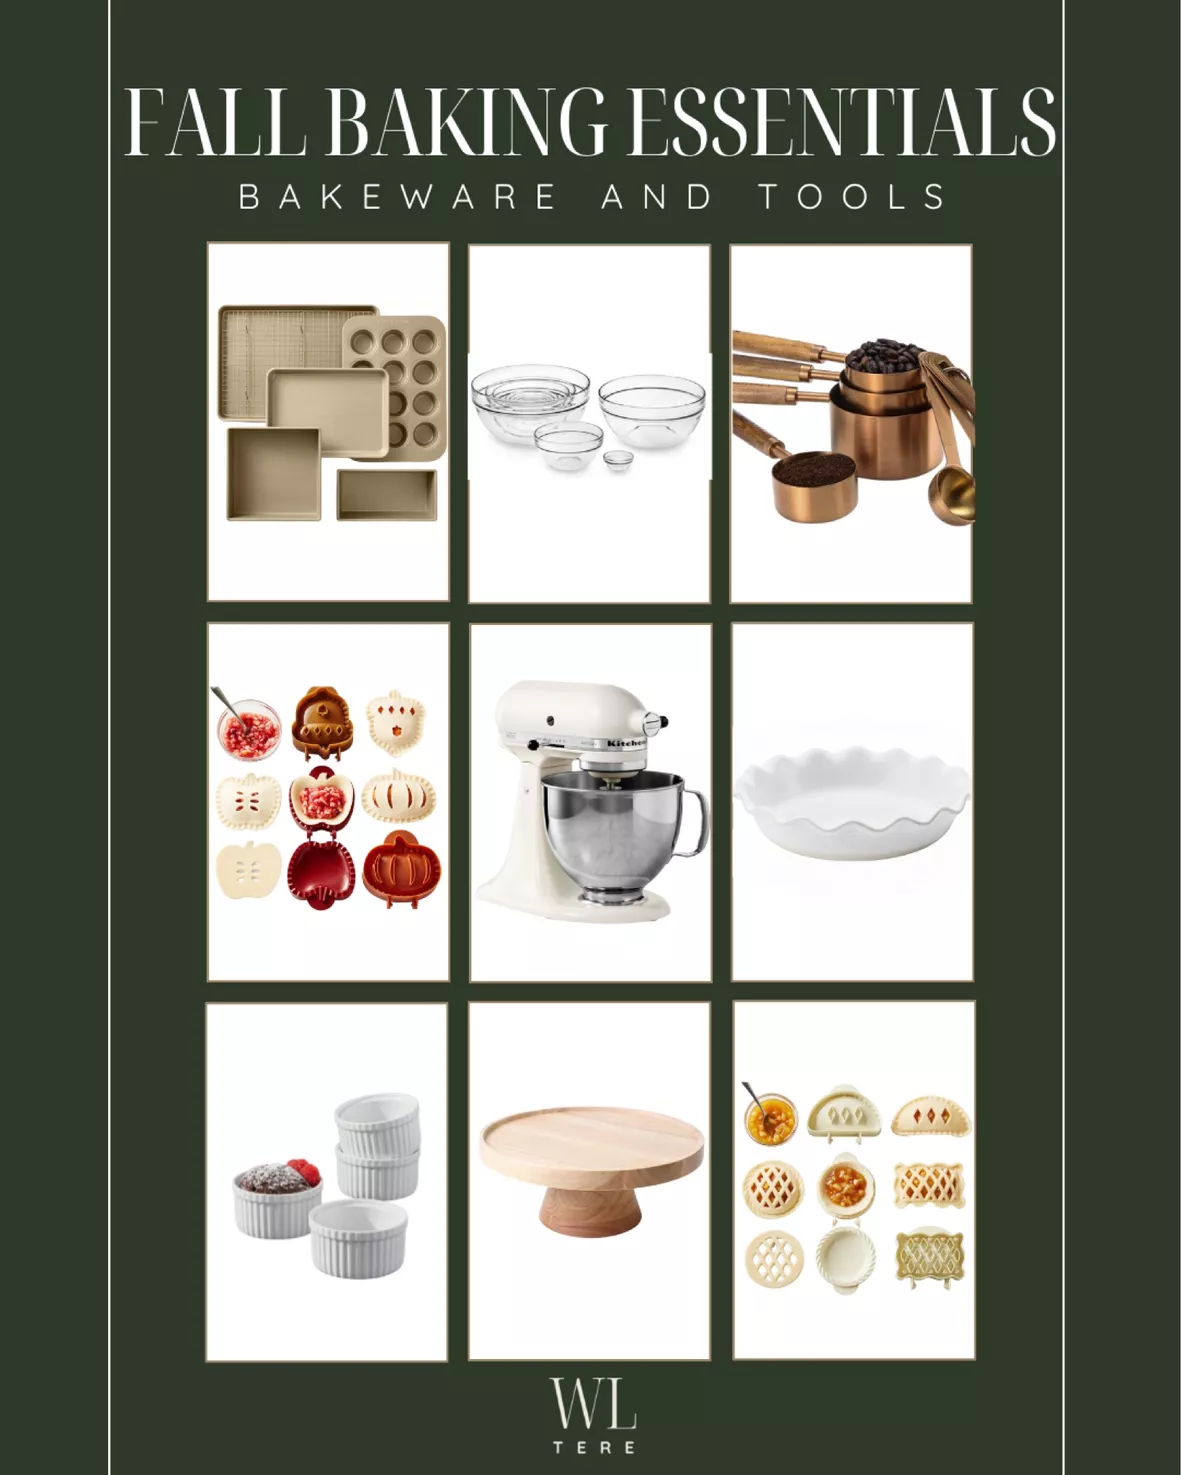 Gold-Touch Baking Sheet: Bakeware & Cookware